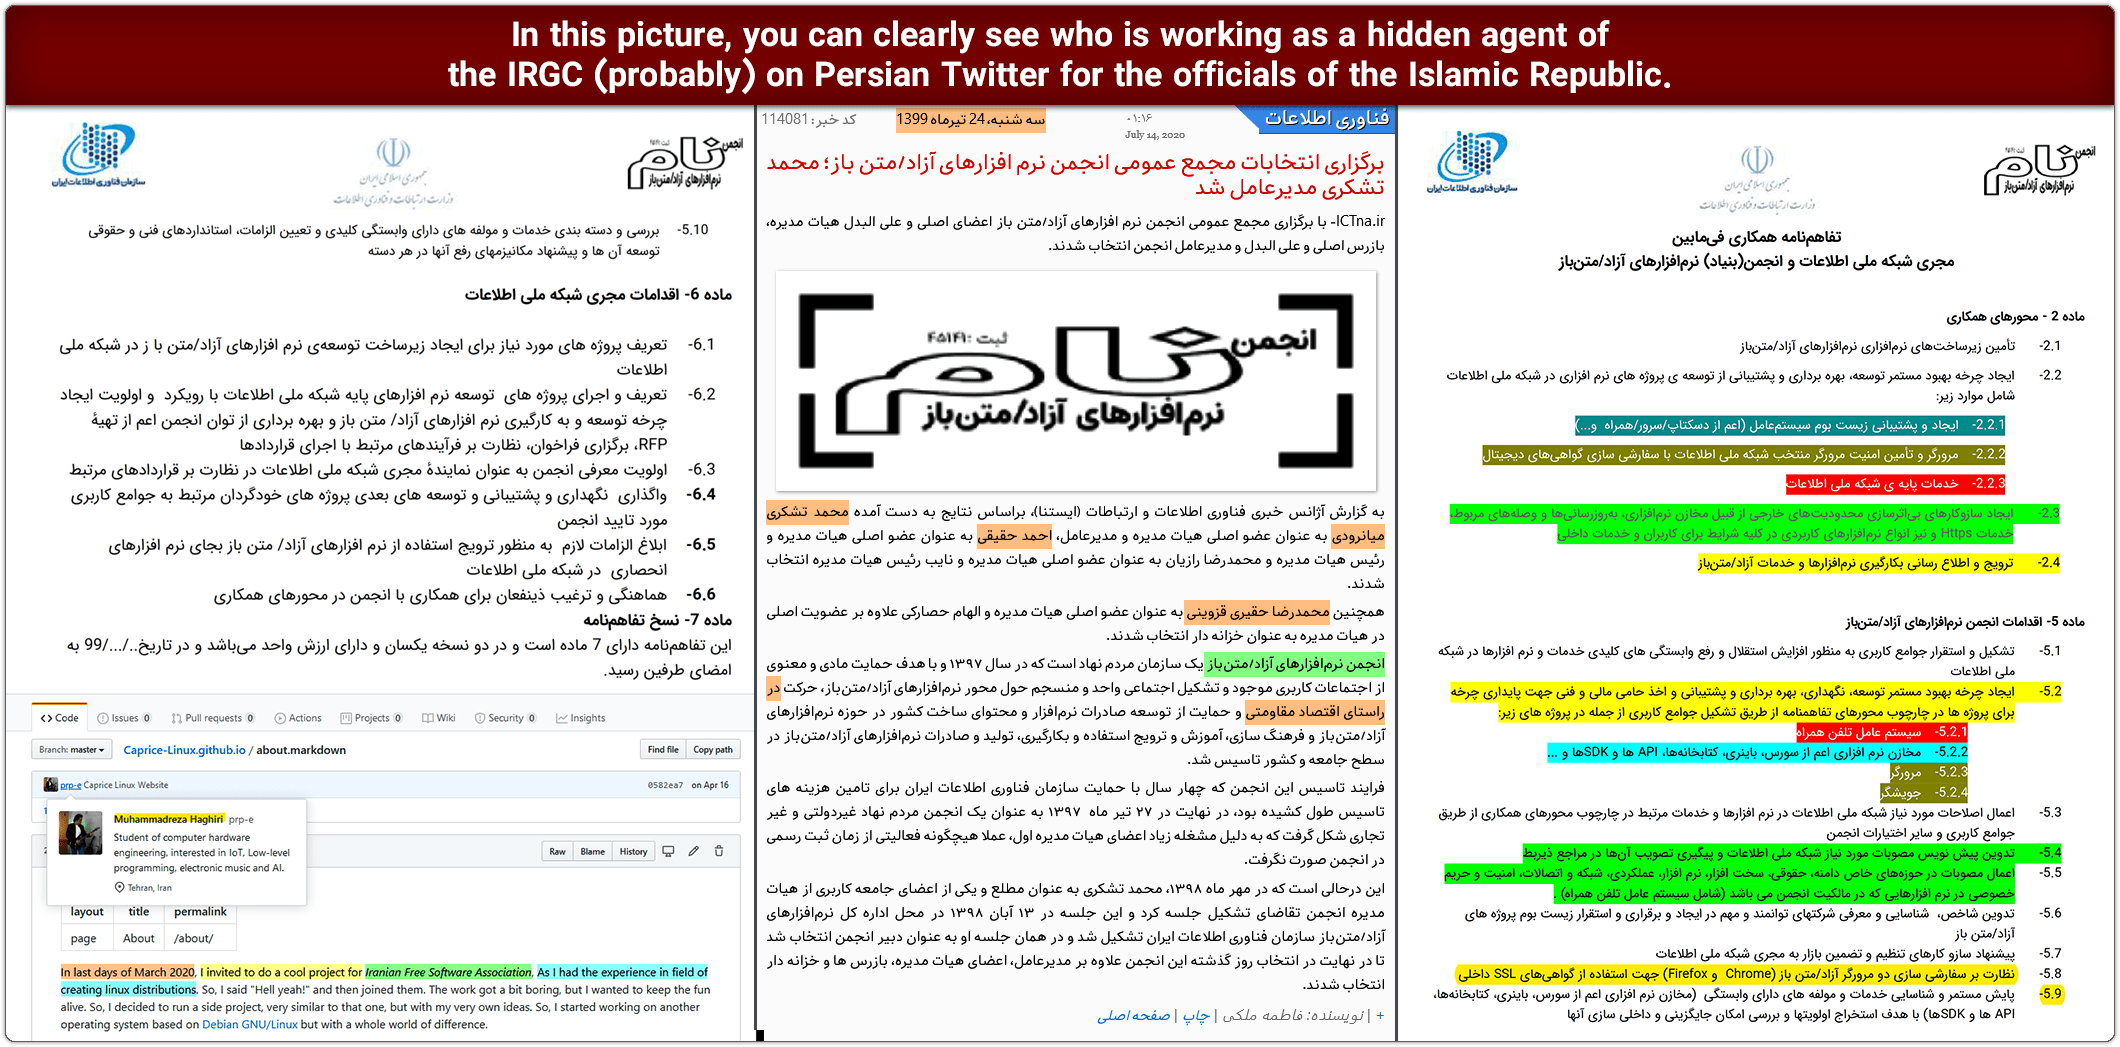 hidden agent of the IRGC 02